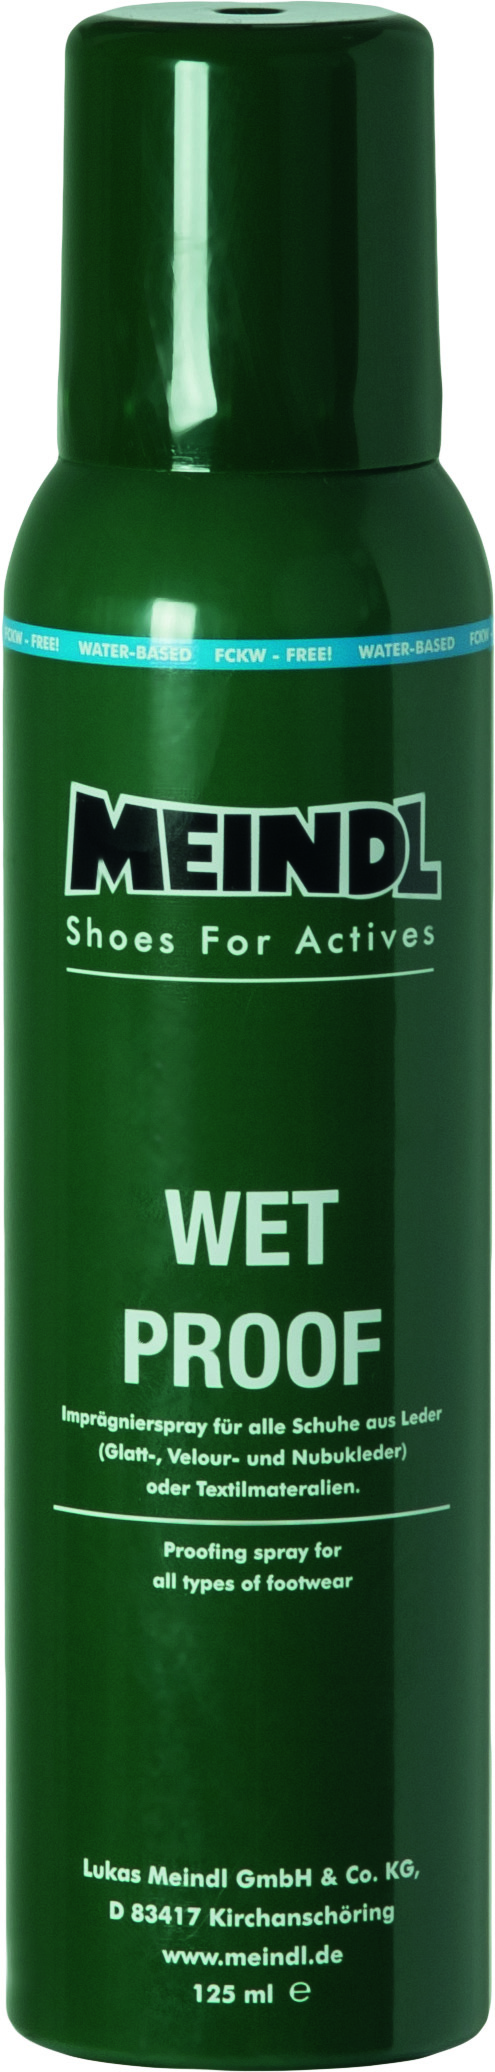 produit imperméabilisant chaussures de marche. Meindl Wet proof